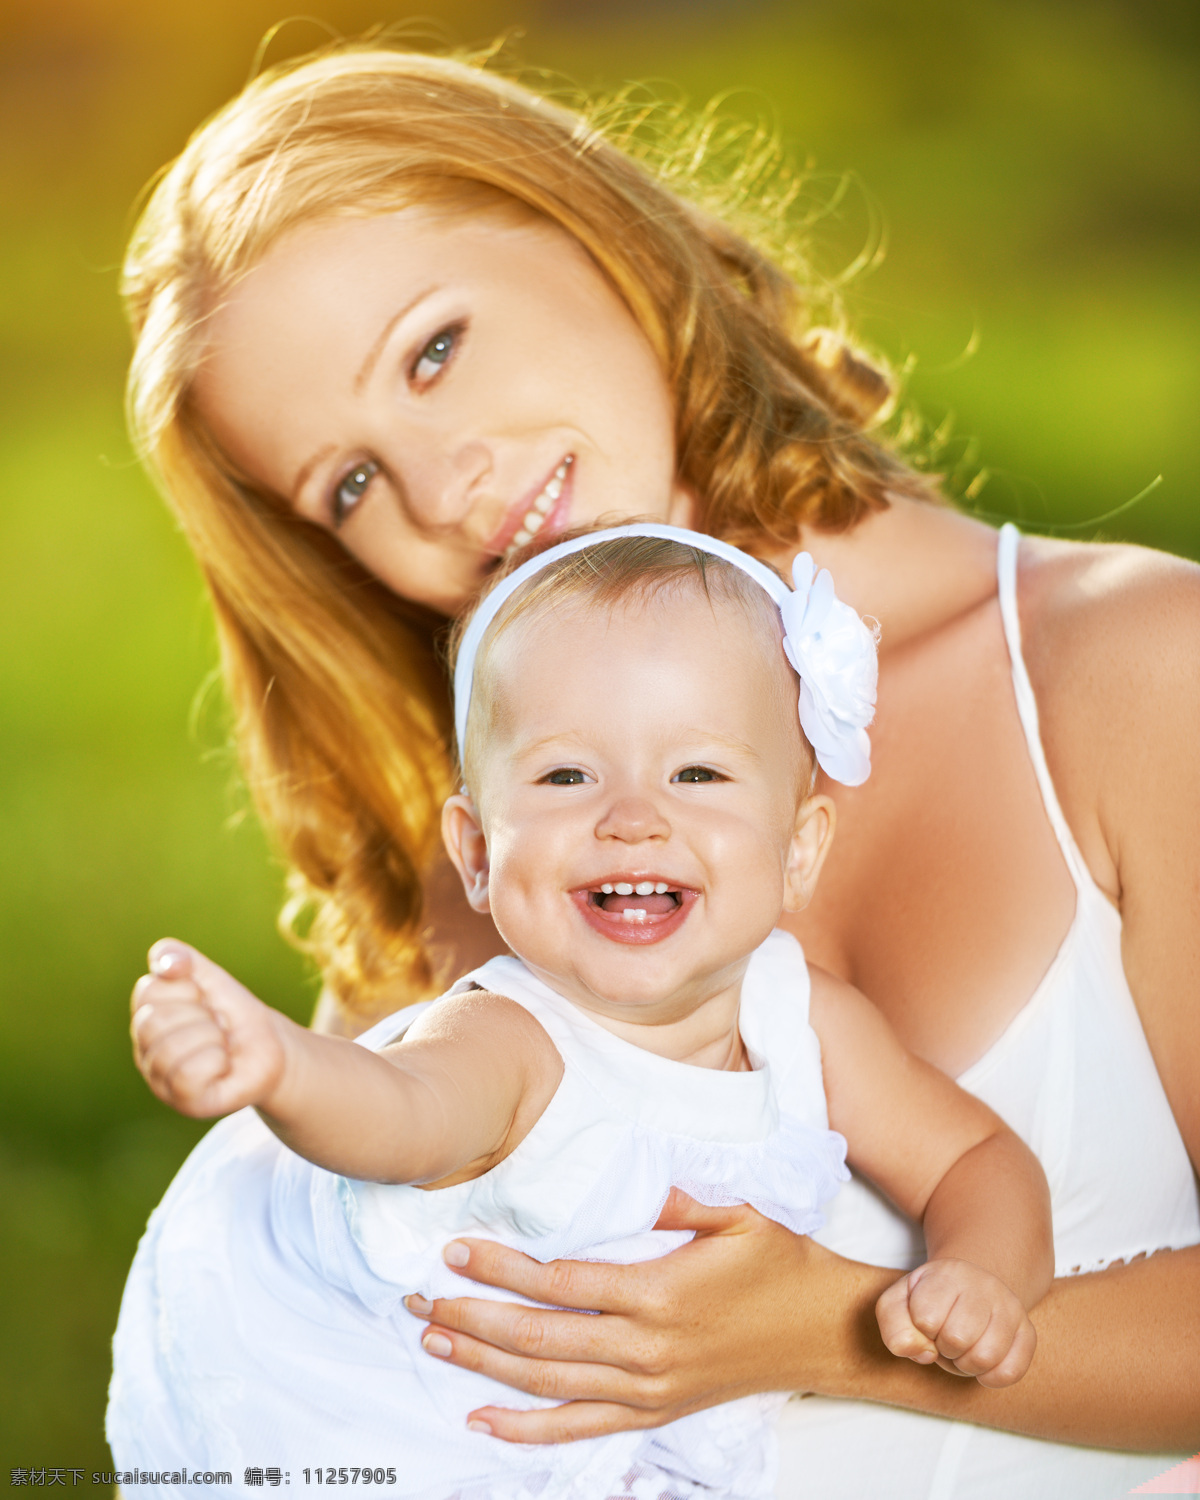 开心 妇女 小孩 外国女人 外国小孩 婴儿 妈妈与小宝宝 人物图库 生活人物 人物图片